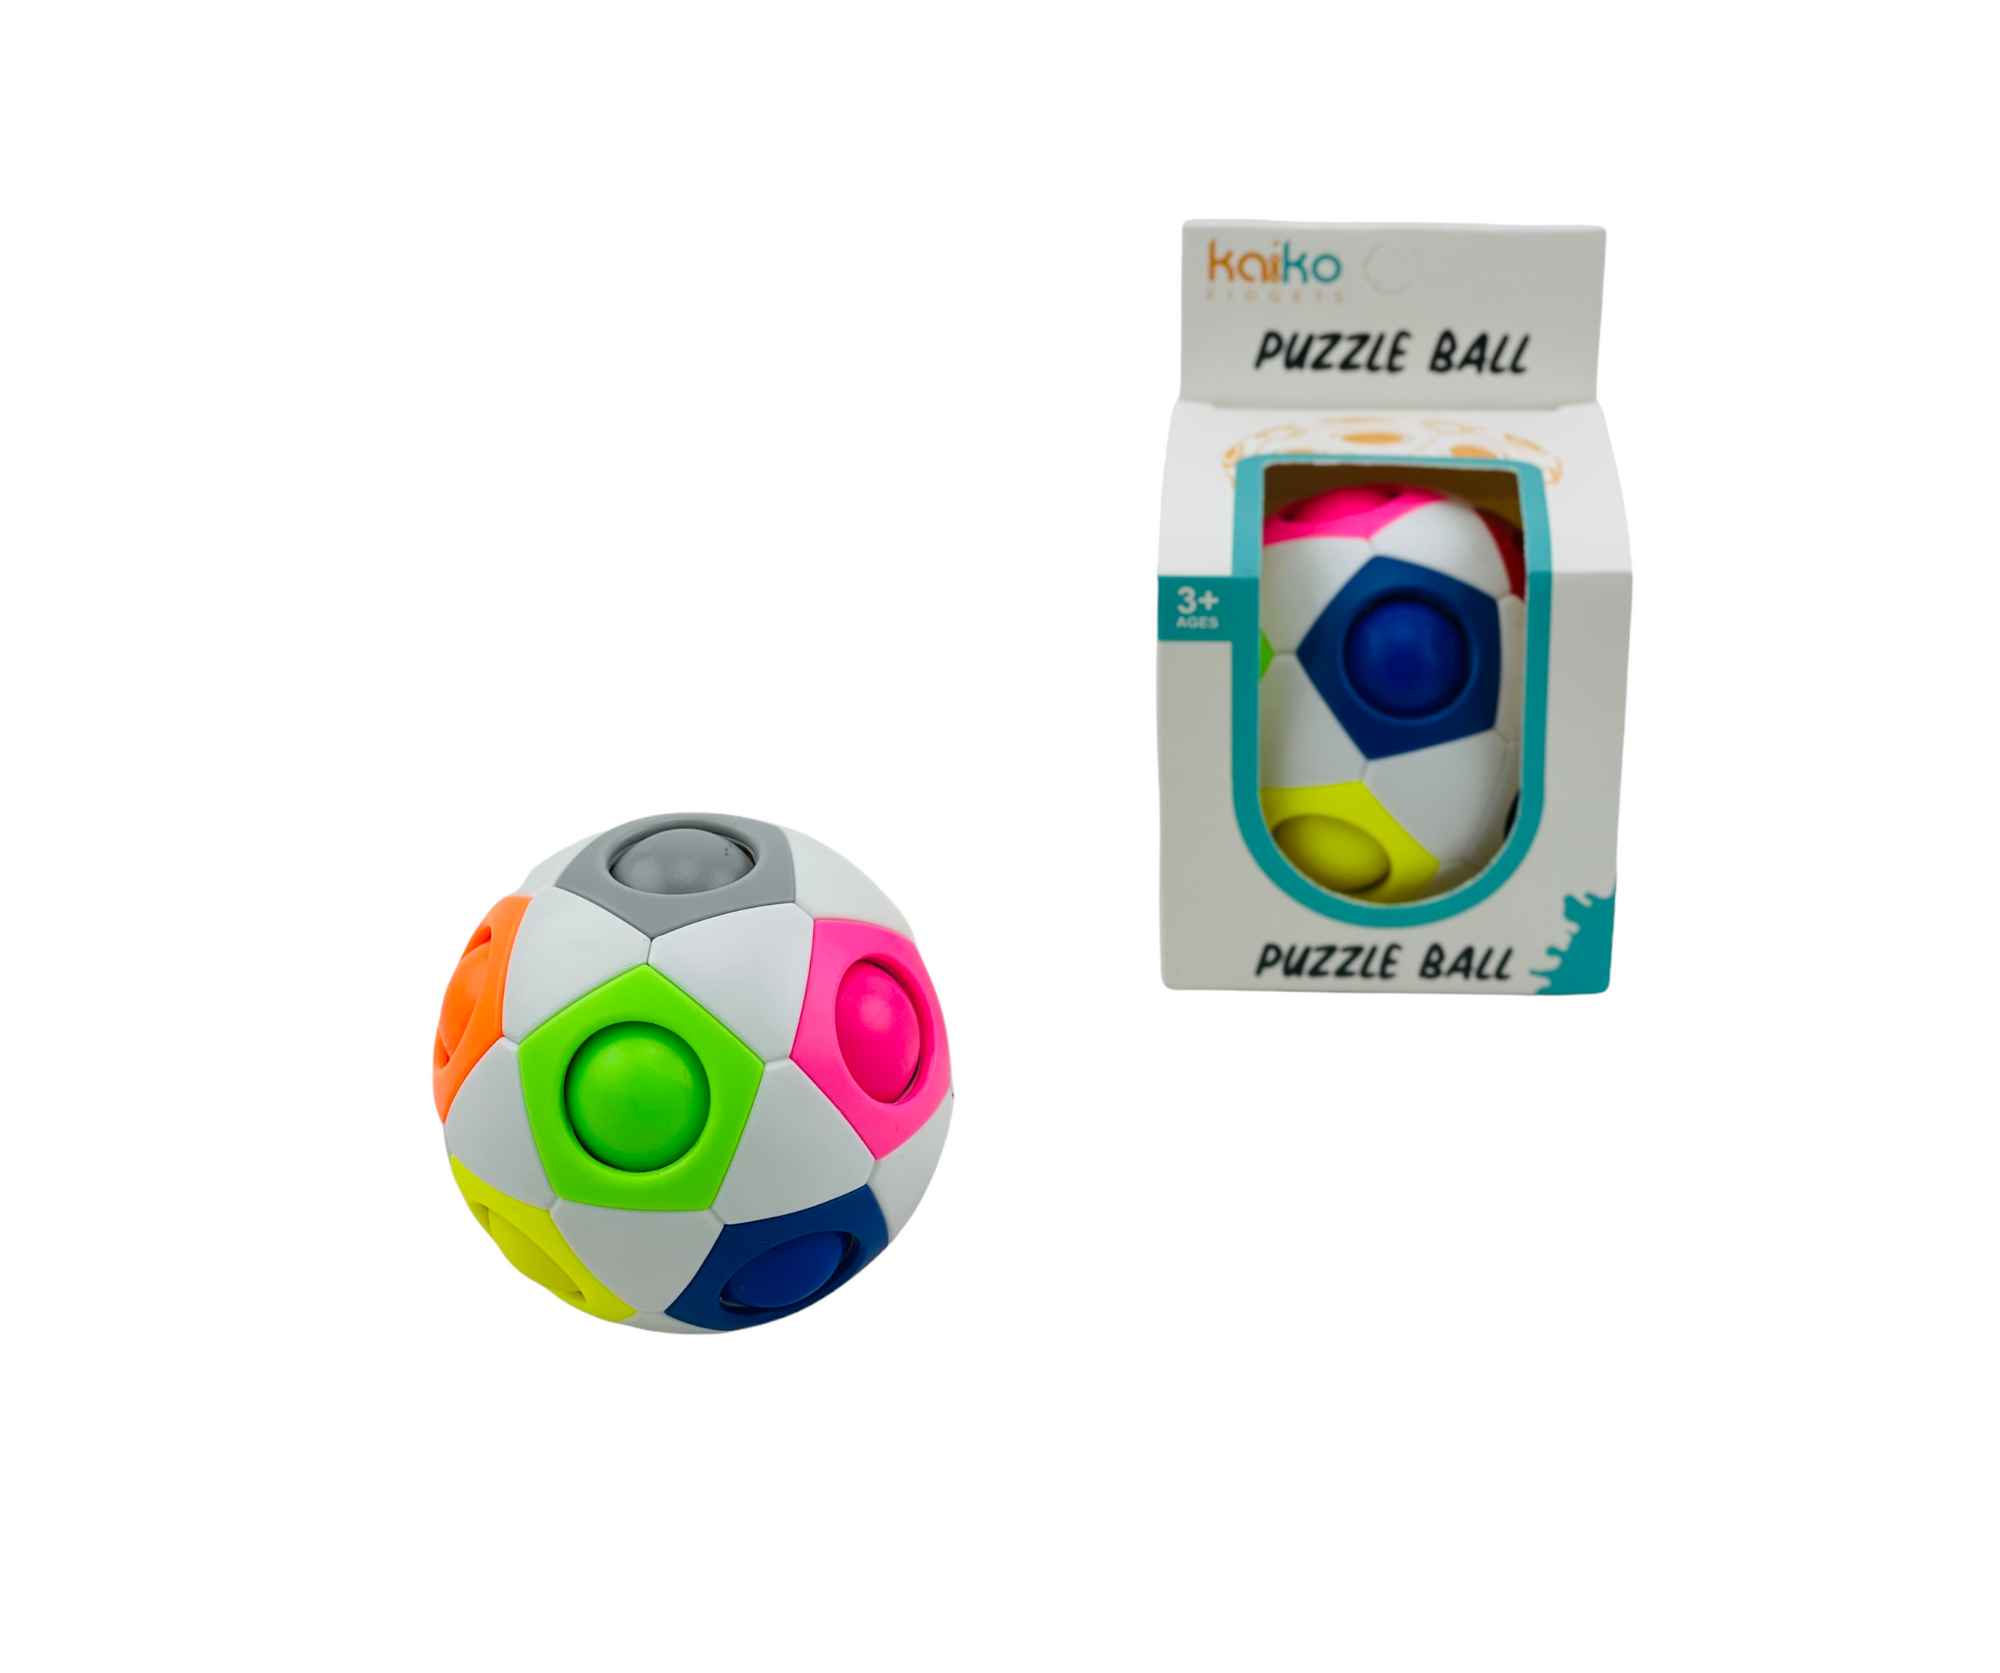 Kaiko Puzzle Ball